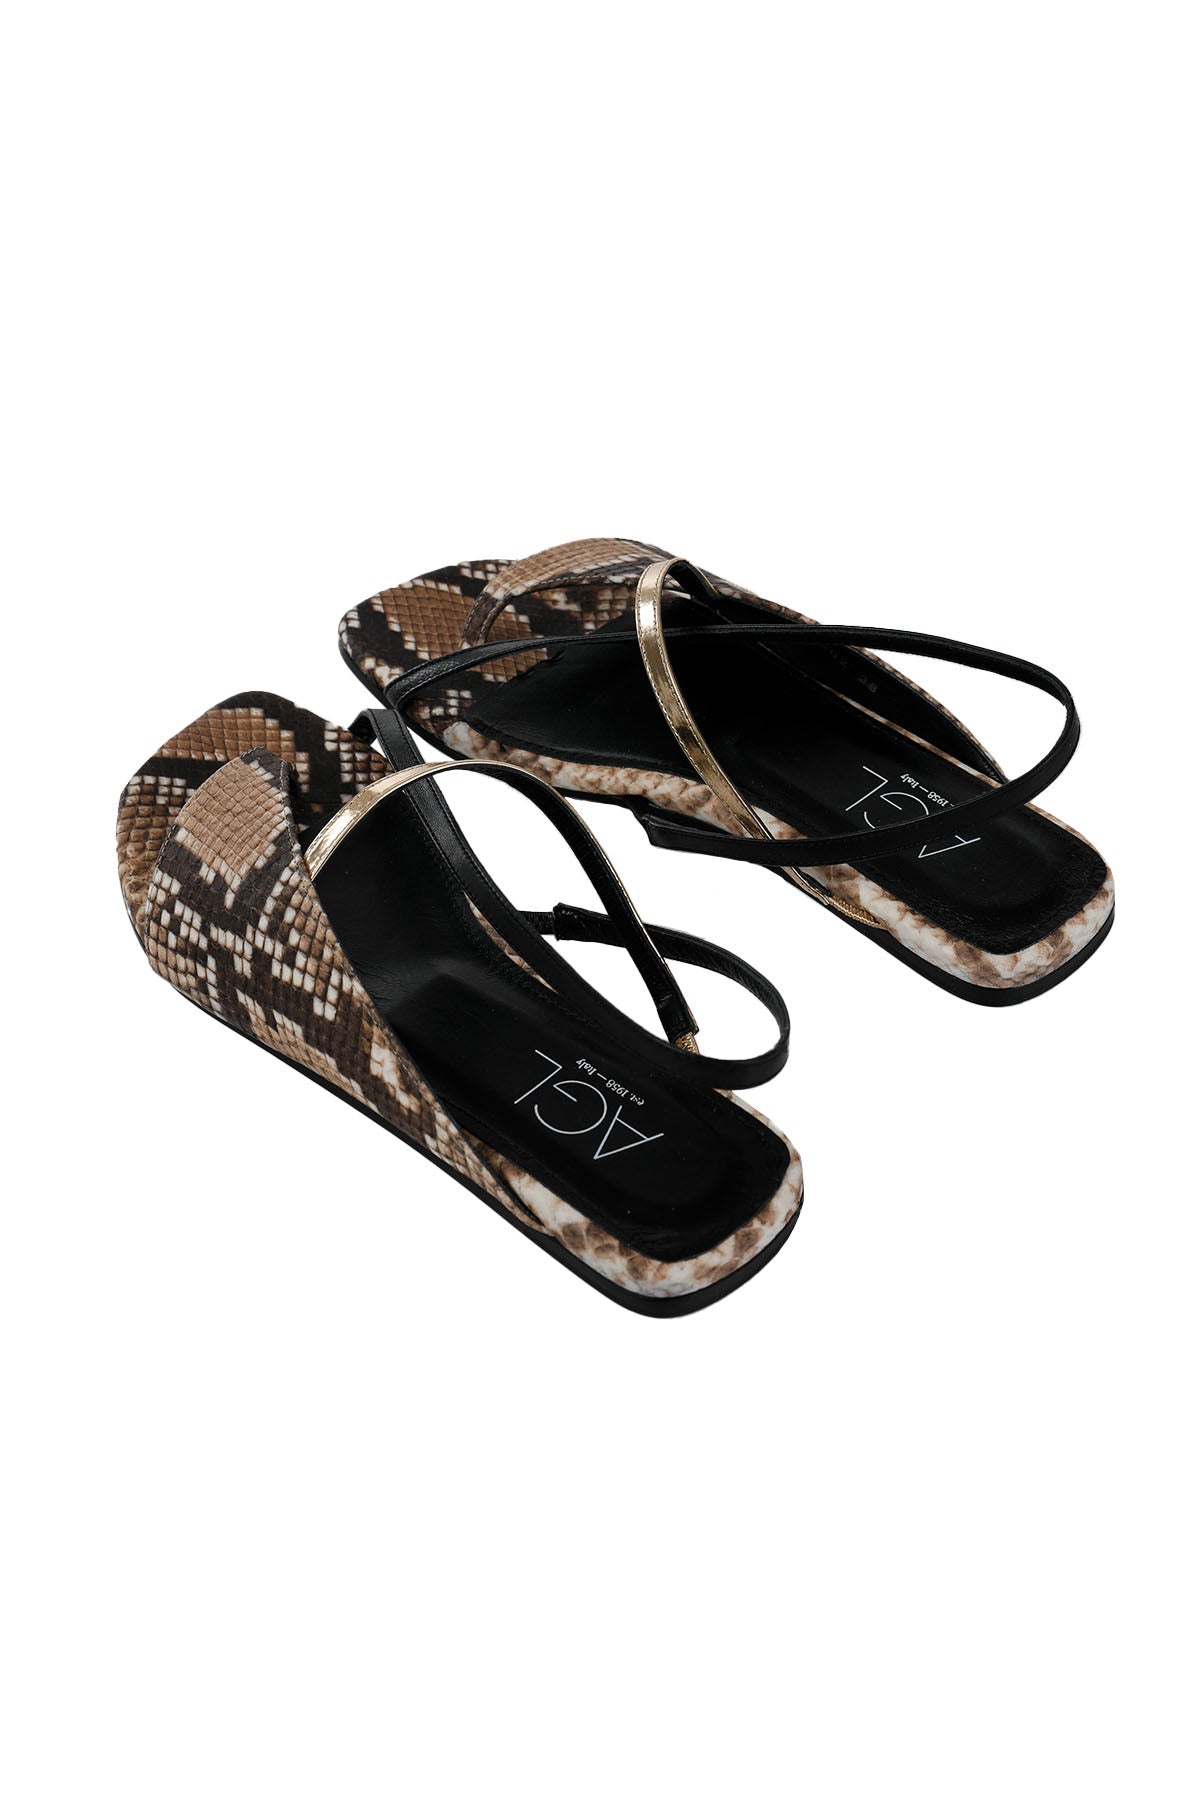 Agl Meriel Küt Burun Piton Sandalet-Libas Trendy Fashion Store